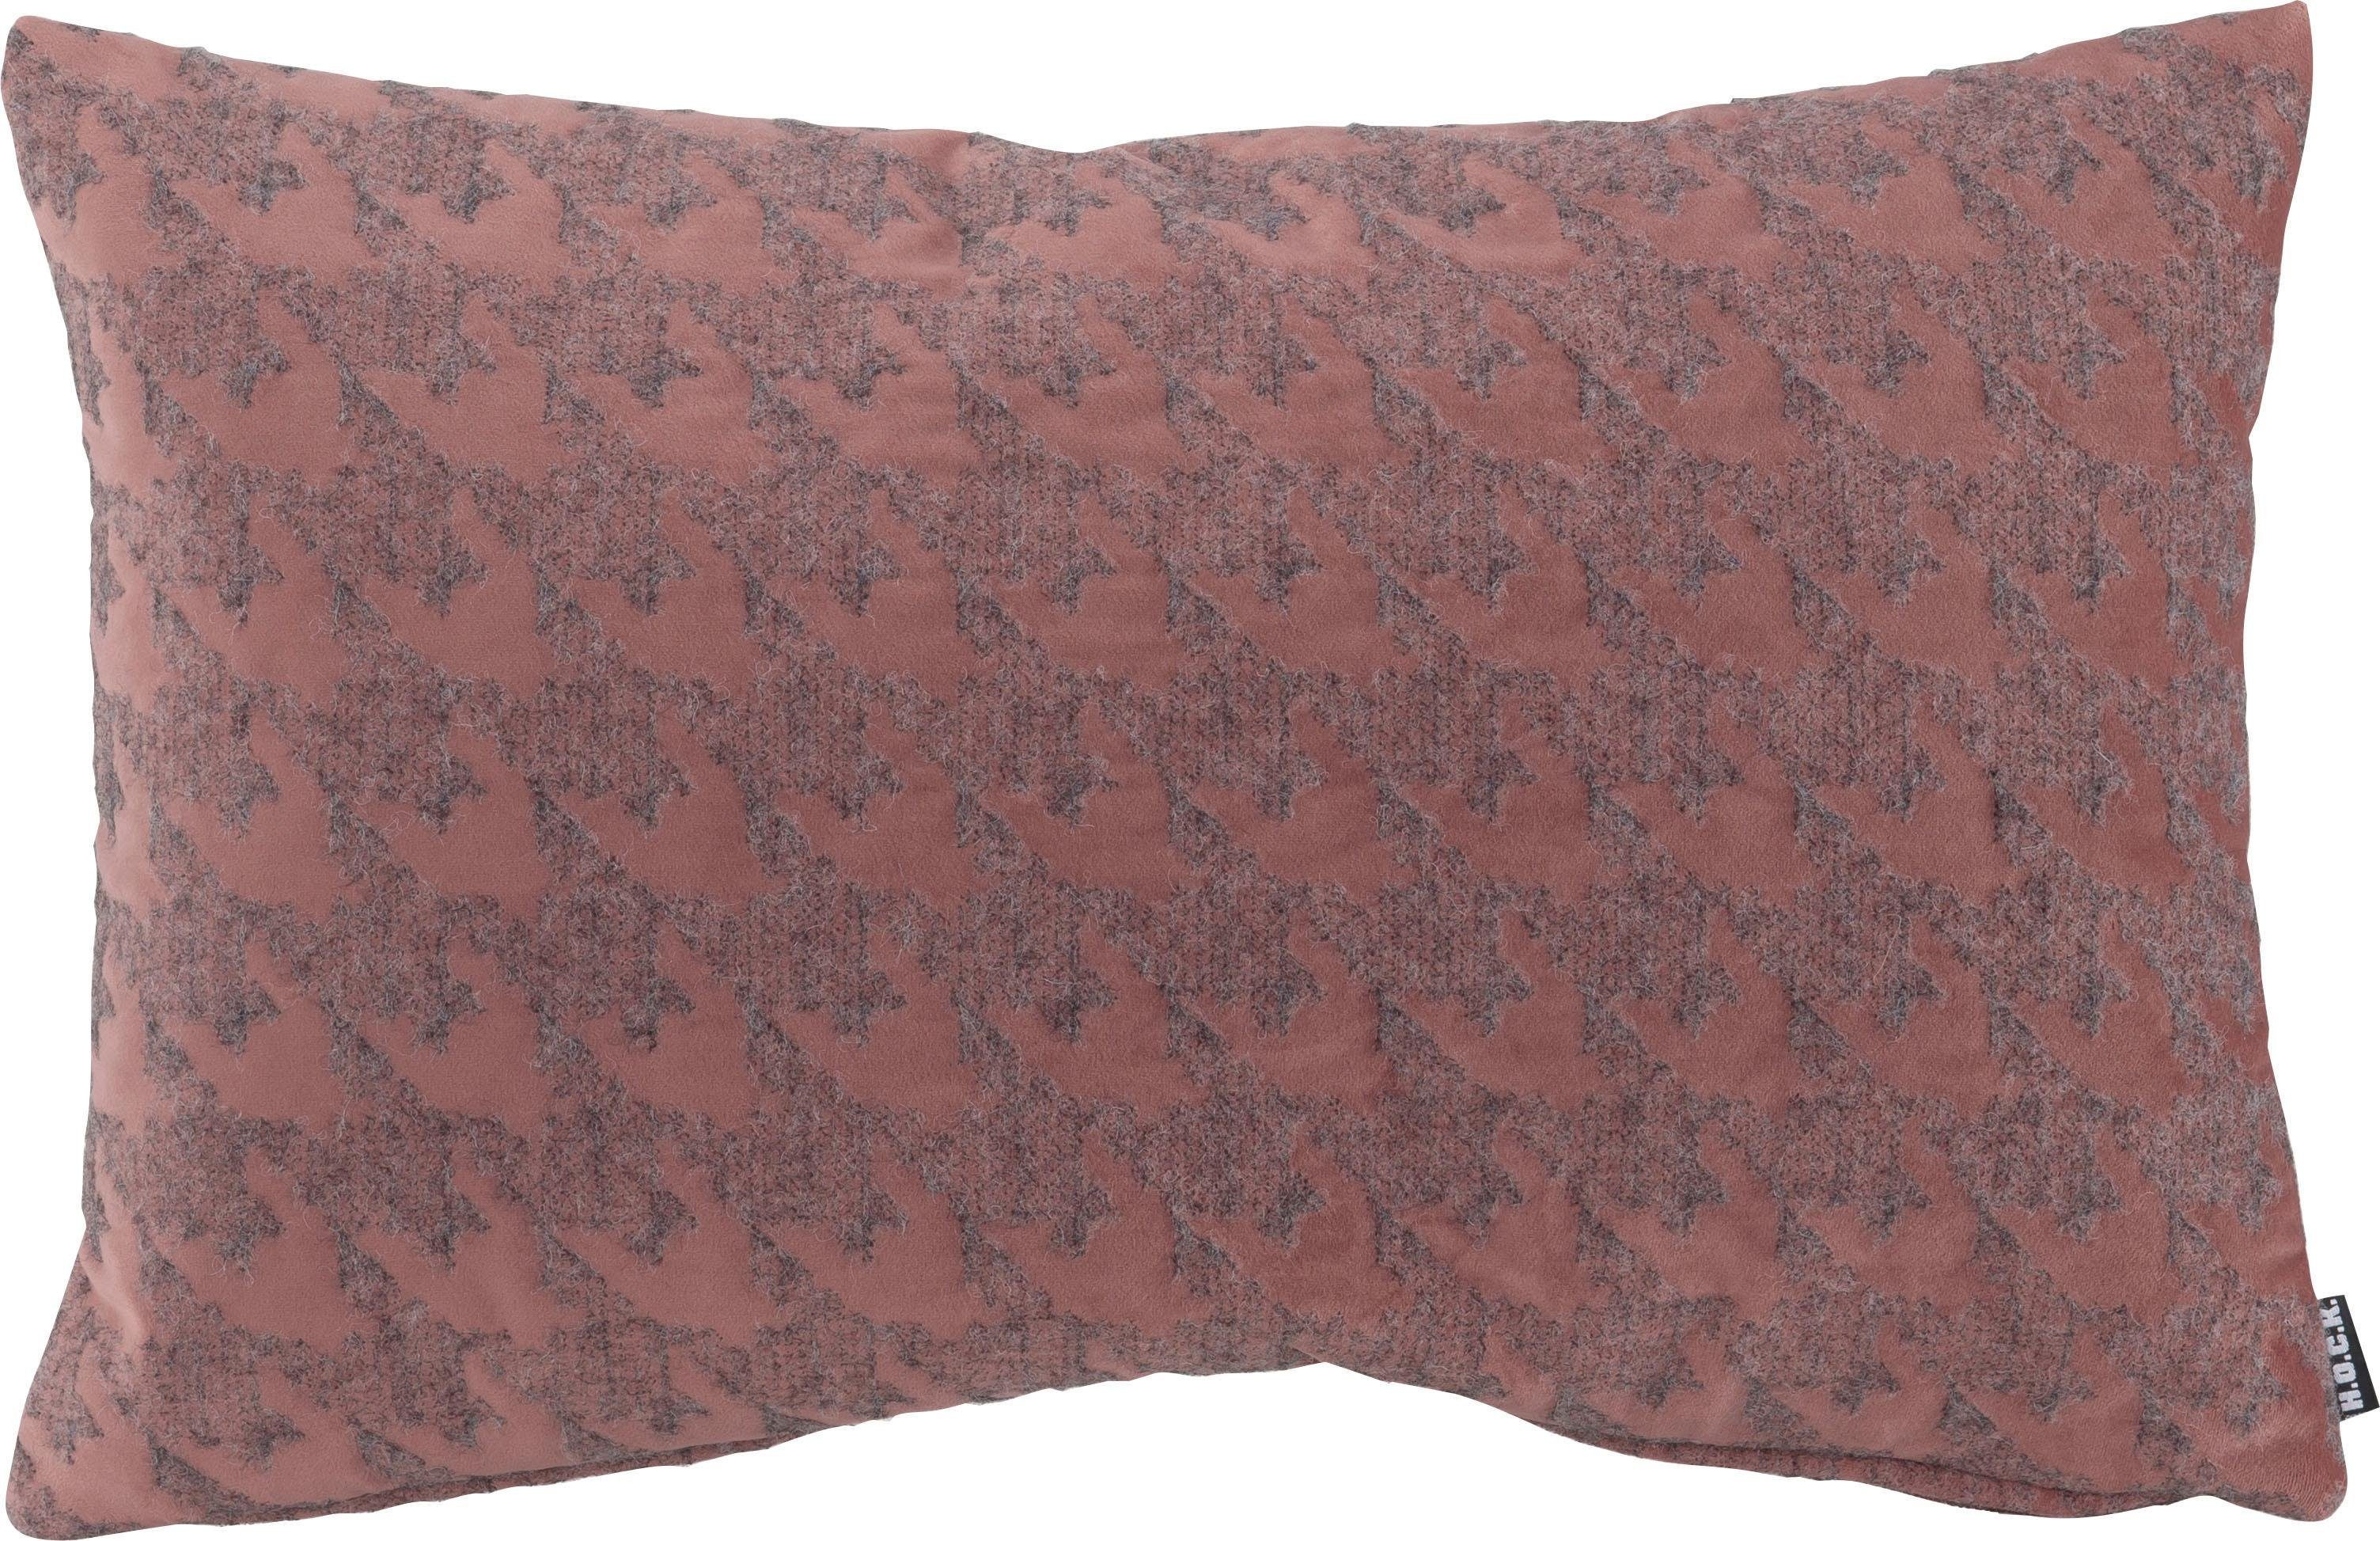 H.O.C.K. Dekokissen Puno, mit rosa Muster, Kissenhülle mit Füllung, 1 Stück